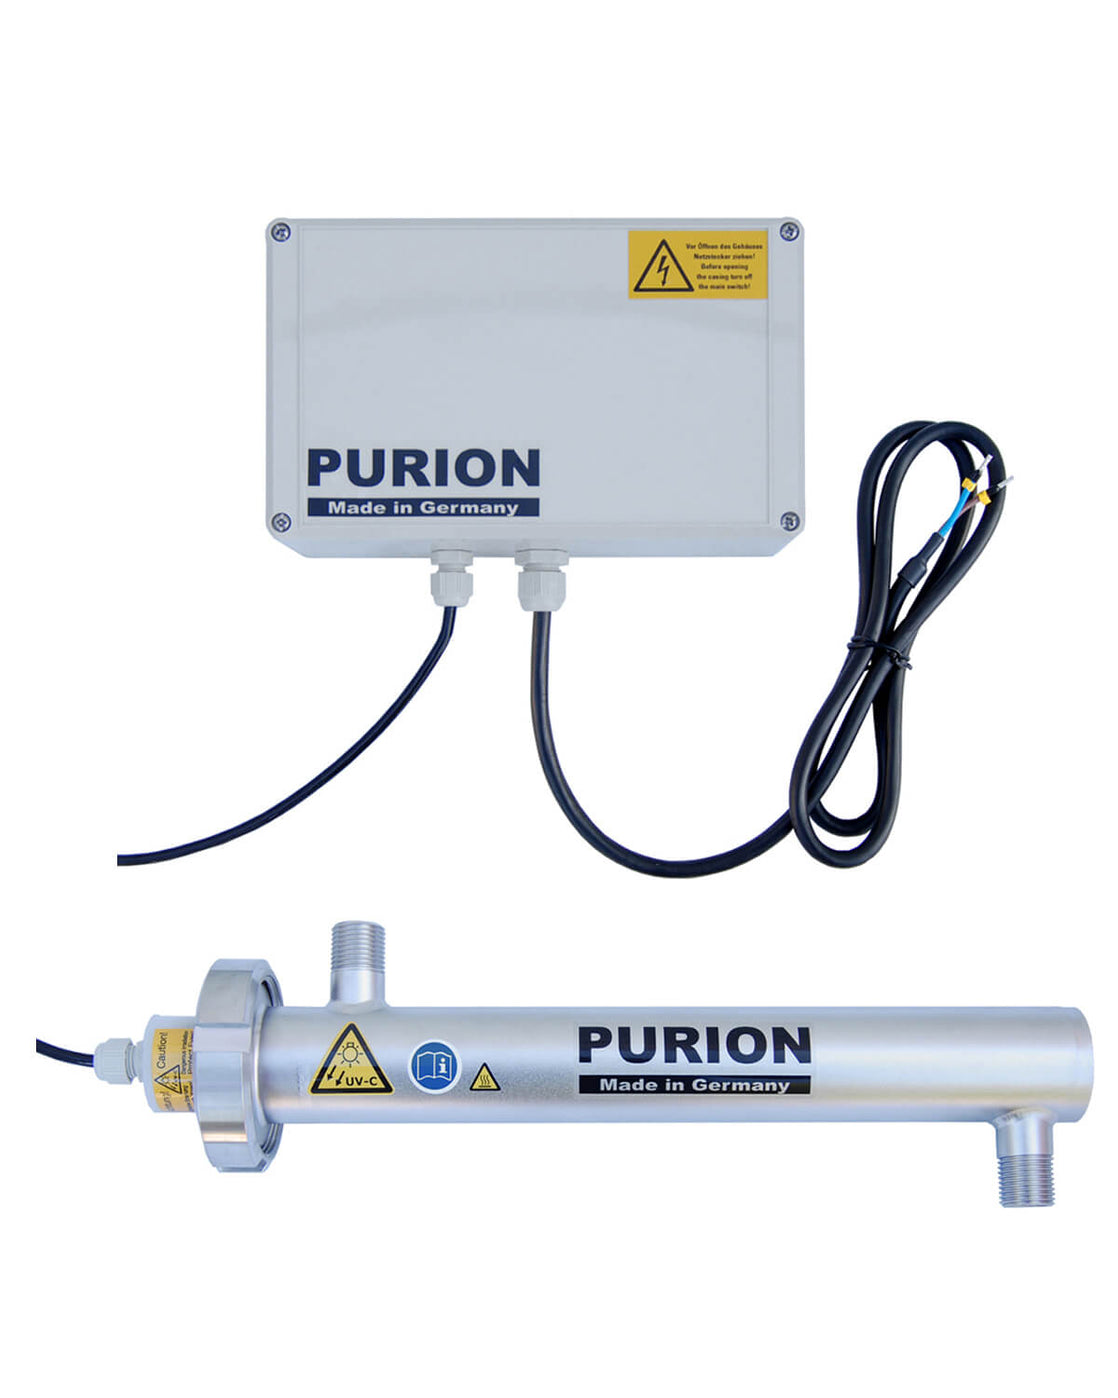 Die PURION 500 12 V/24 V DC Basic der PURION GmbH ist eine Desinfektionsanlage, die durch ihren effizienten Trinkwasseraufbereitungsprozess eine hohe Trinkwasserqualität gewährleistet.